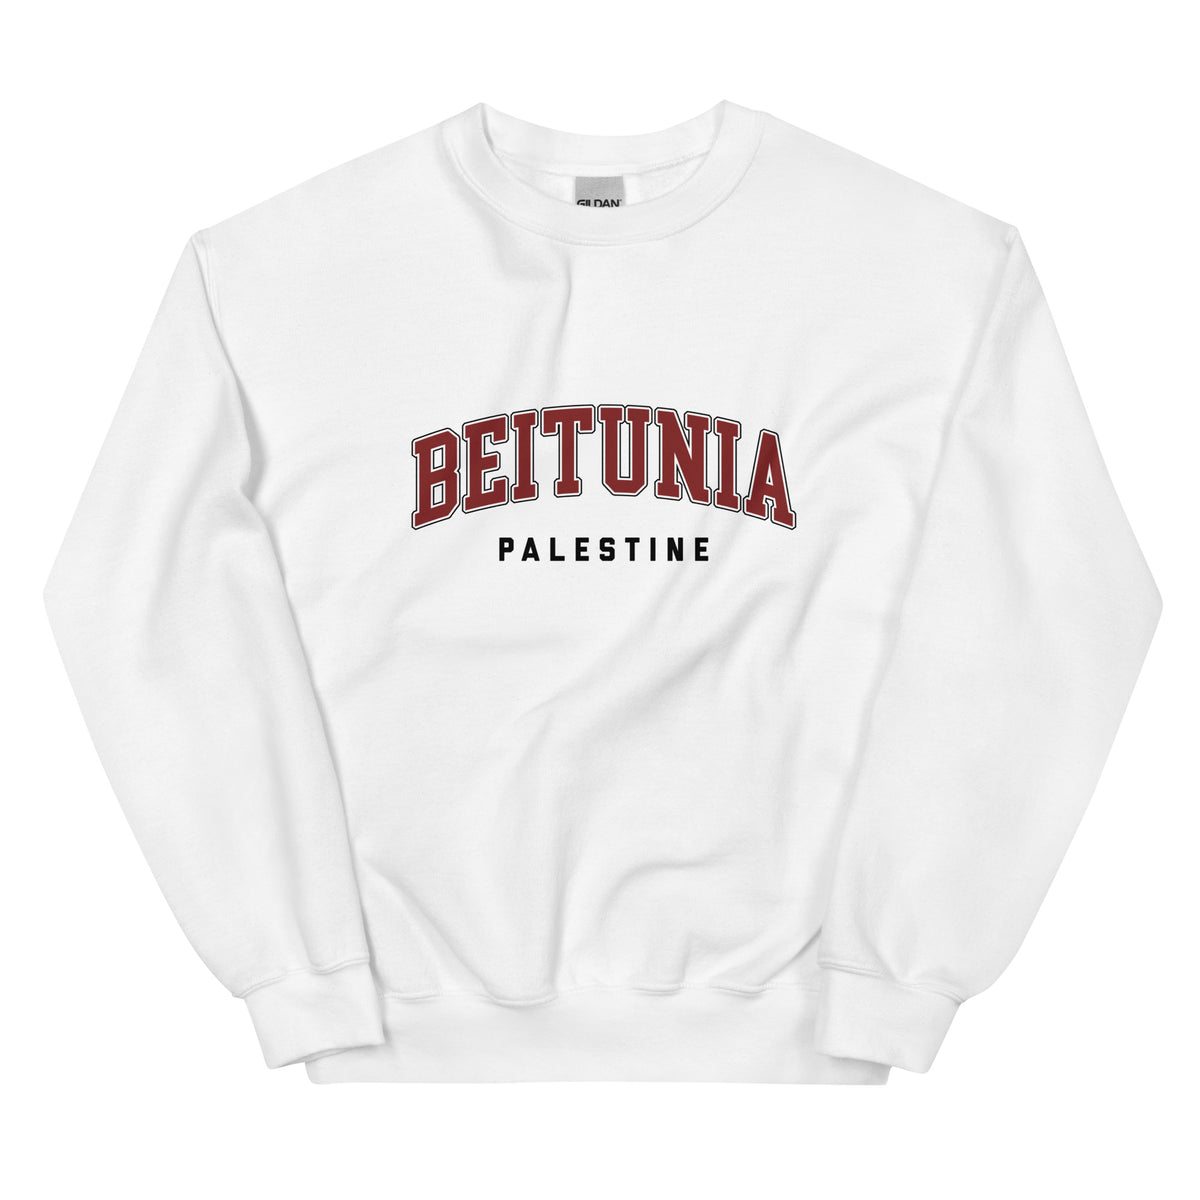 Beitunia, Palestine - Sweatshirt